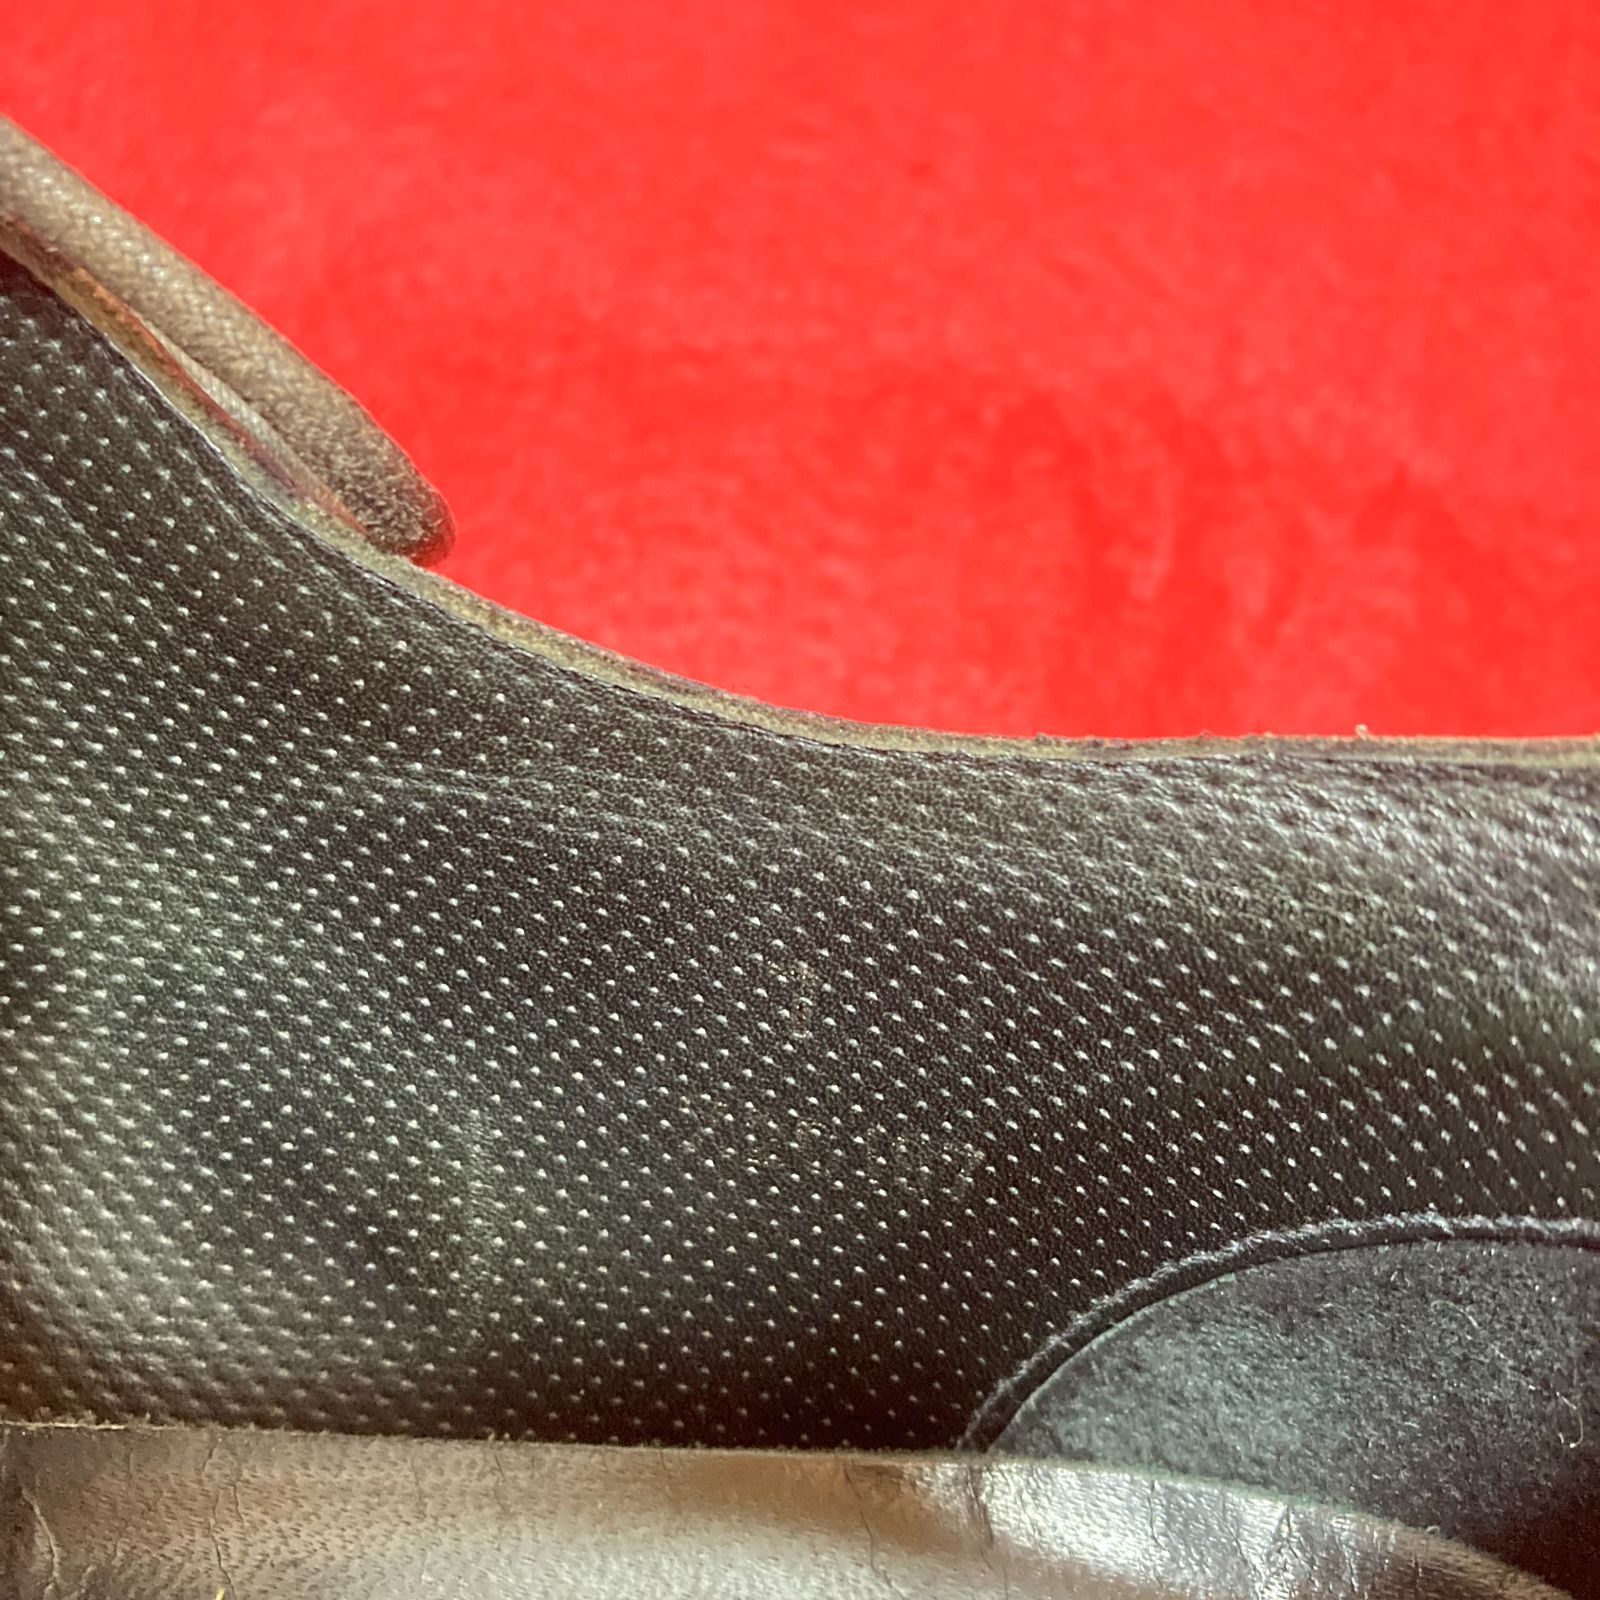 ジョルジオアルマーニ GIORGIO ARMANI 靴 25cm ネイビー系 カジュアルシューズ ビジネスシューズ パッチング レザー メンズ 伊製 7